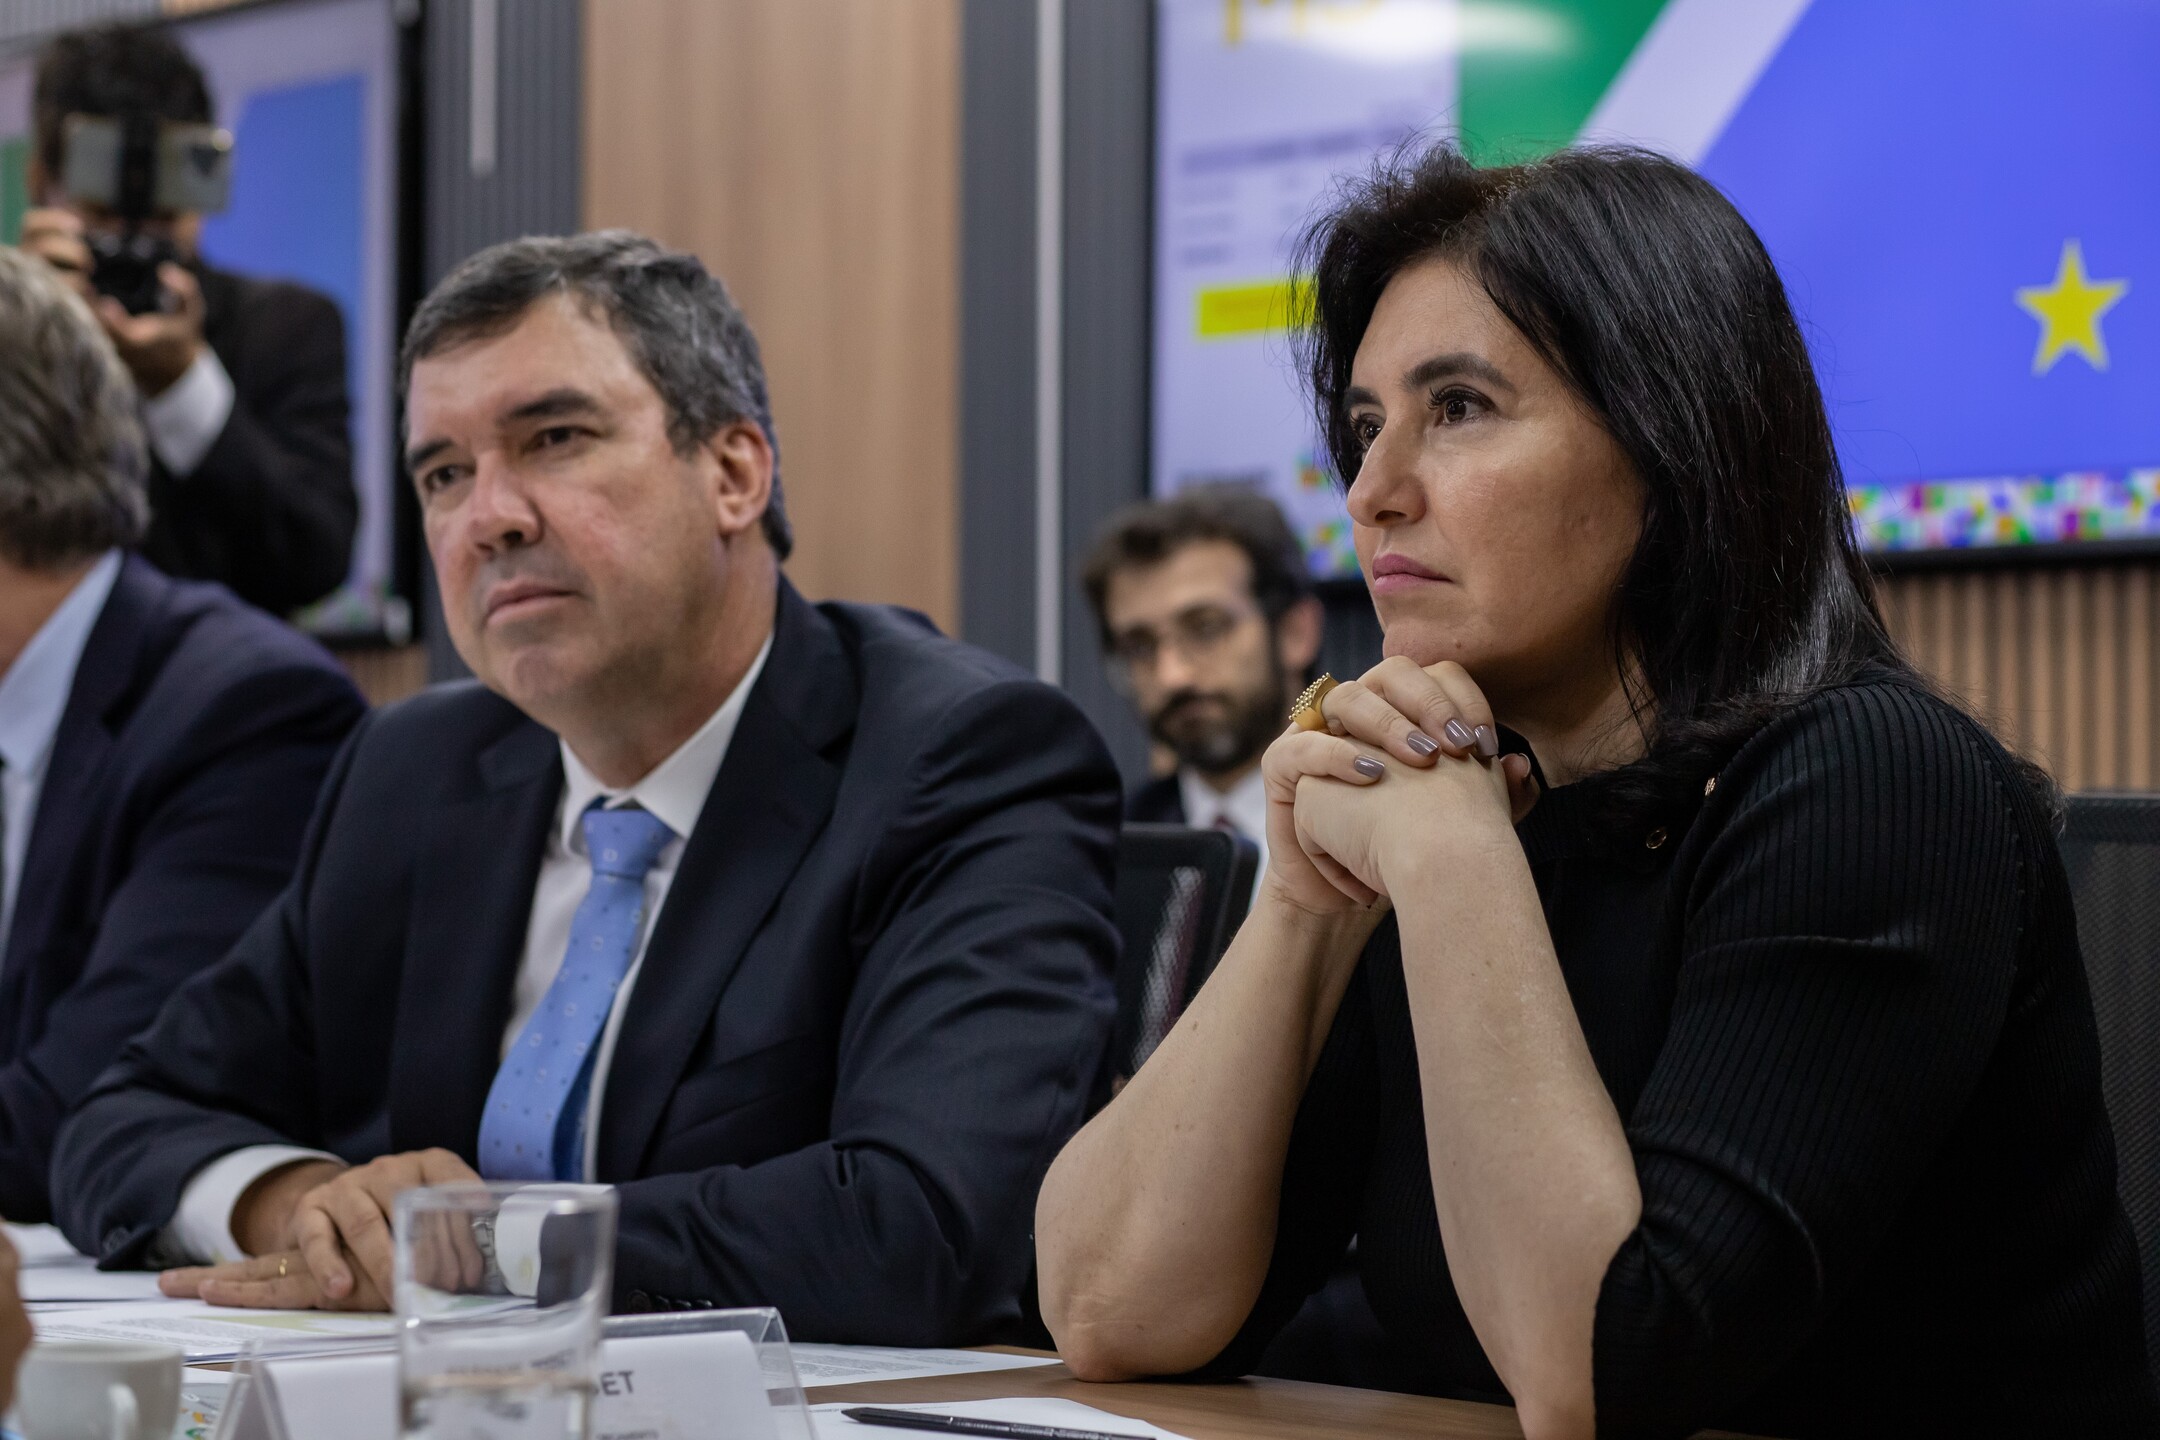 A ministrra do Planejamento Simone Tebet ao lado de Riedel em Brasília. Foto: Ministério dos Transportes